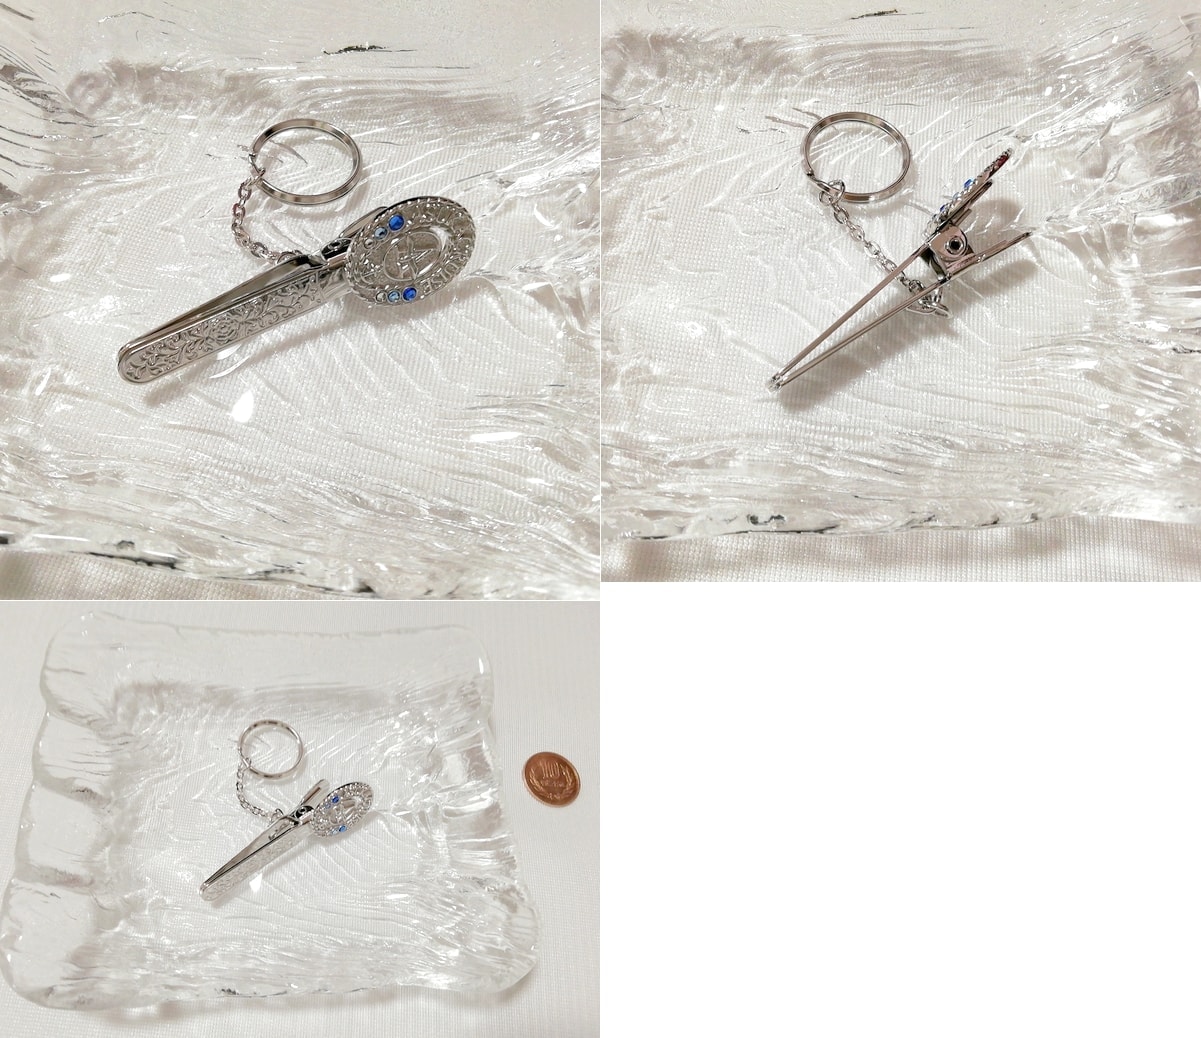 銀シルバー鍵型ピンキーホルダー/ジュエリー/アクセサリー Silver key chain jewelry accessories, 雑貨, キーホルダー, 一般